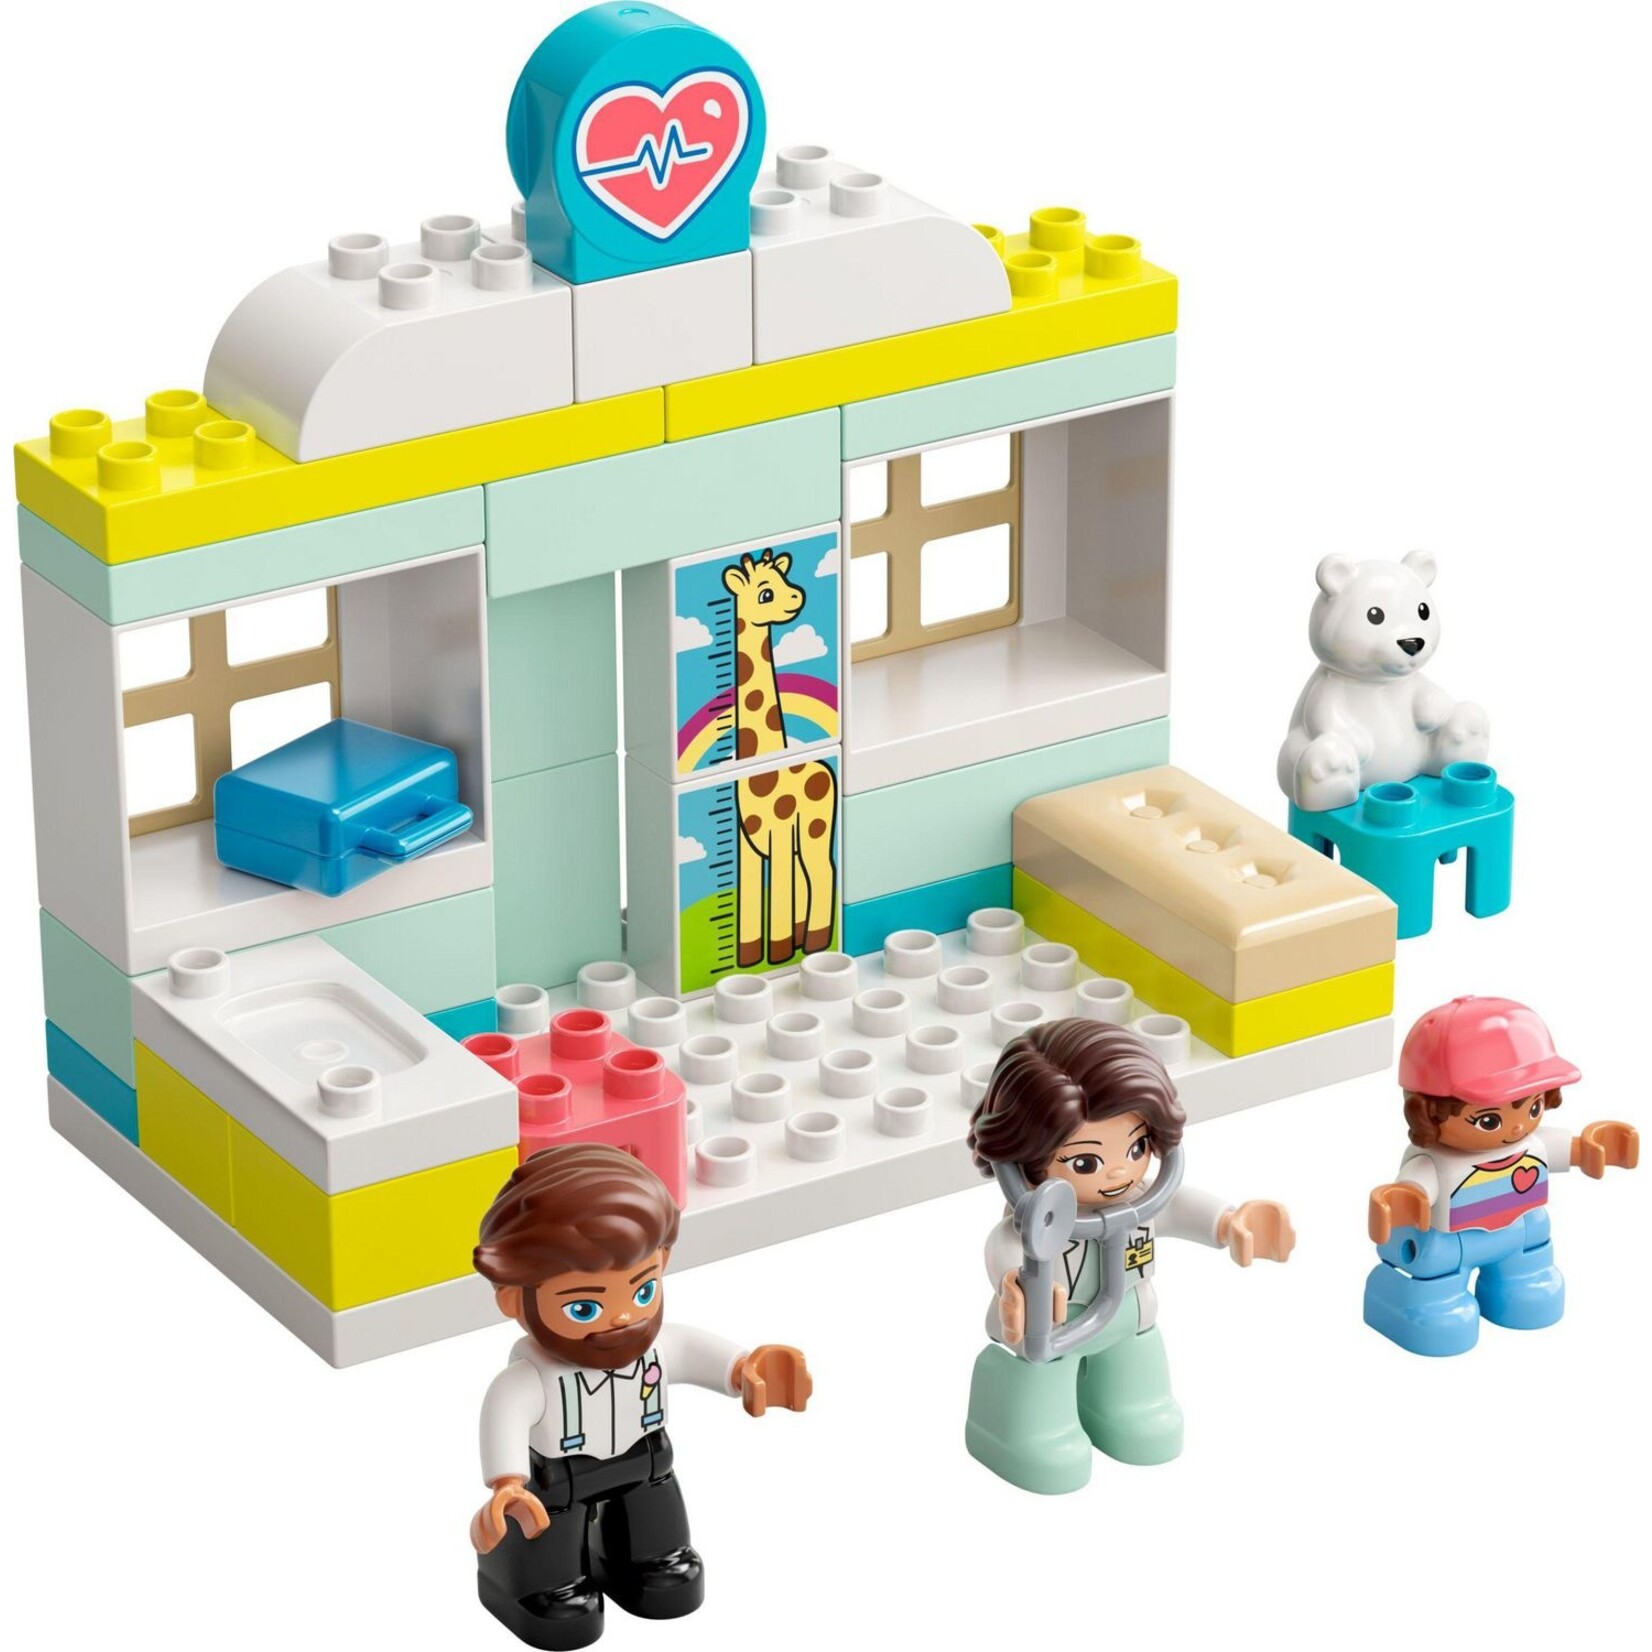 LEGO Duplo - doctor visit